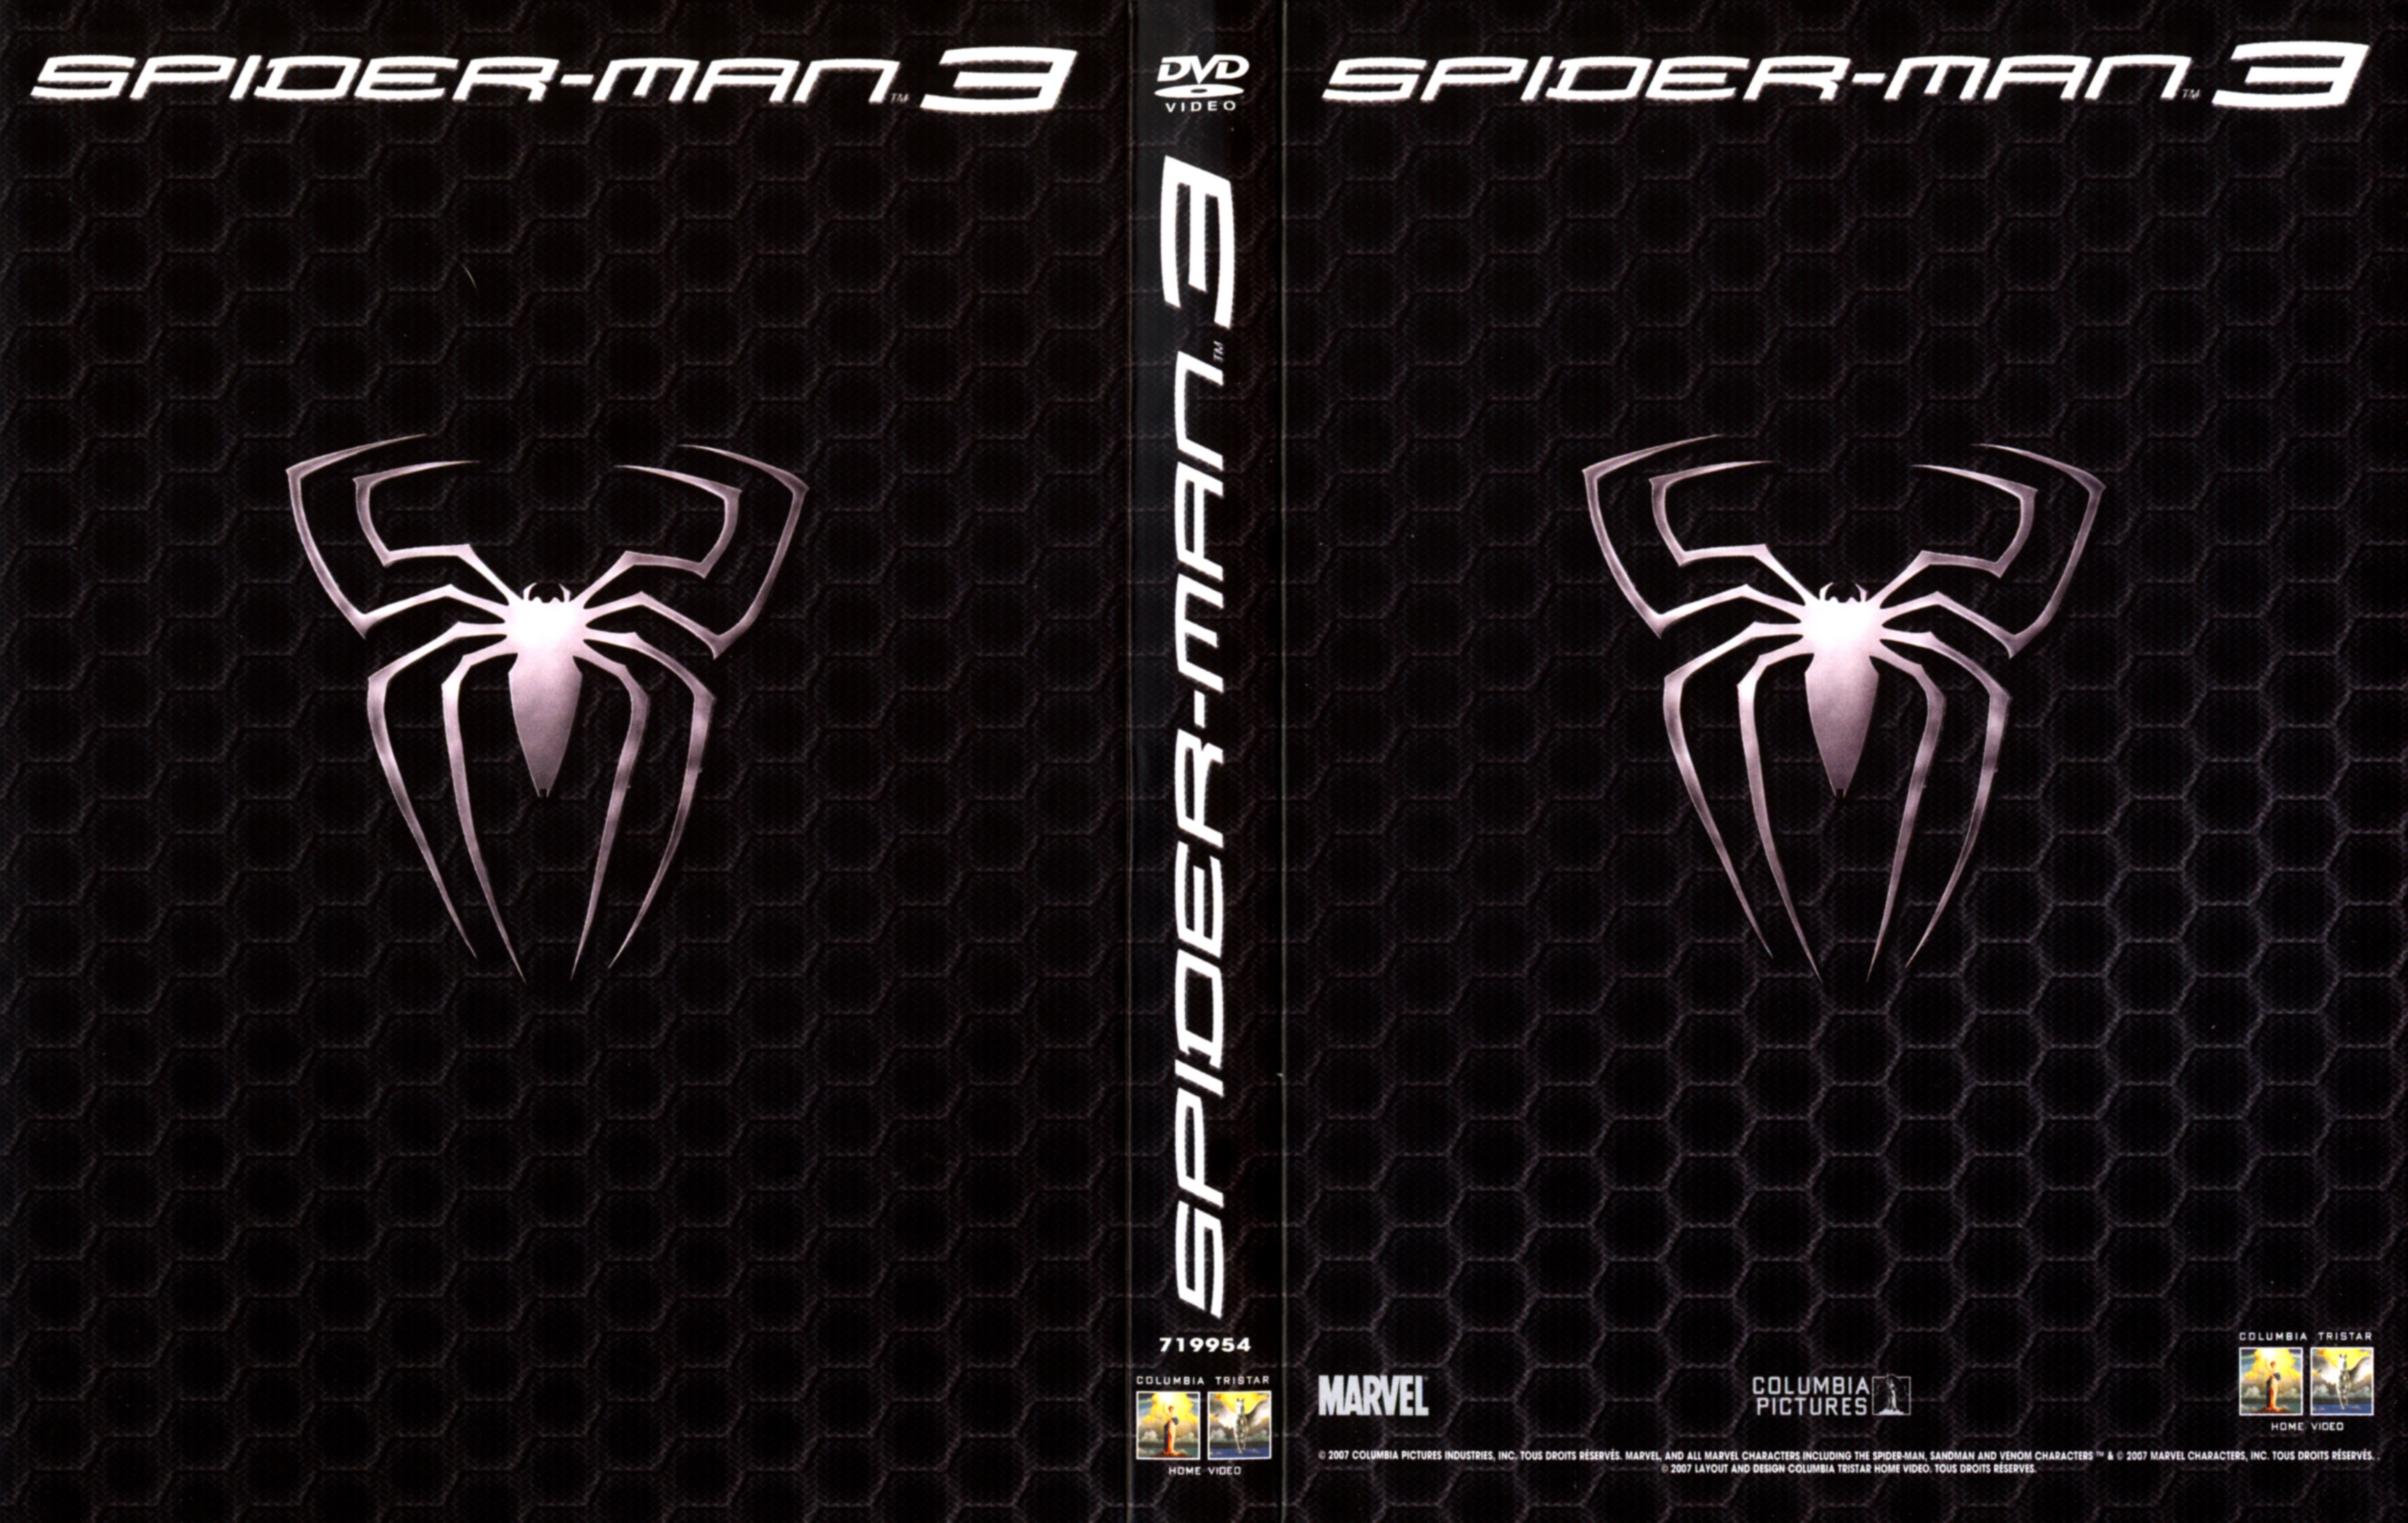 Jaquette DVD Spiderman 3 v3